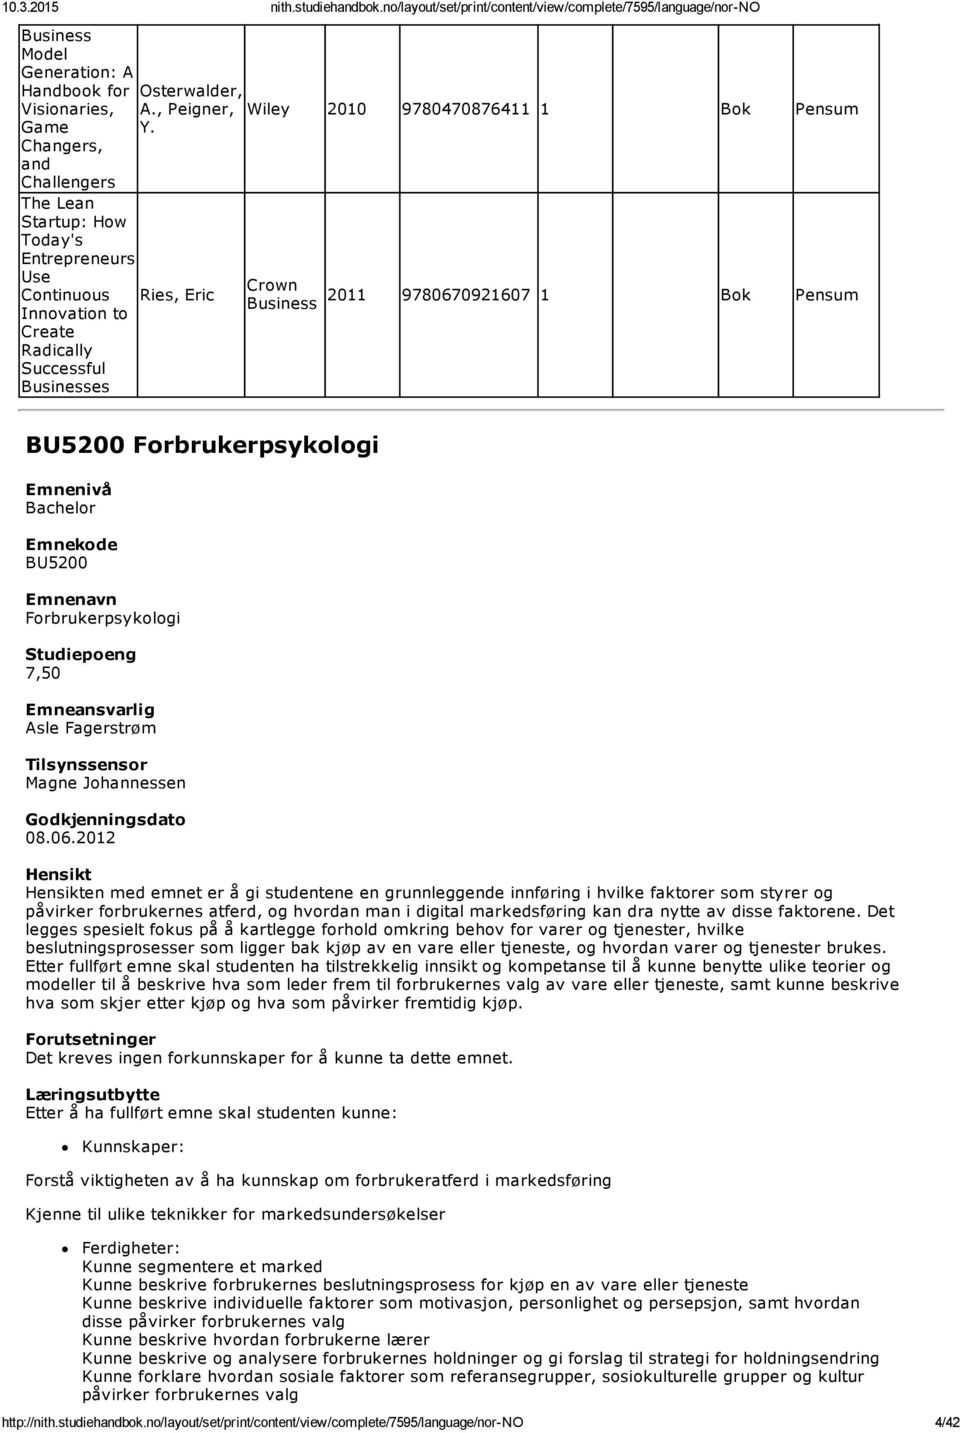 BU5200 Forbrukerpsykologi BU5200 Forbrukerpsykologi Asle Fagerstrøm Magne Johannessen 08.06.